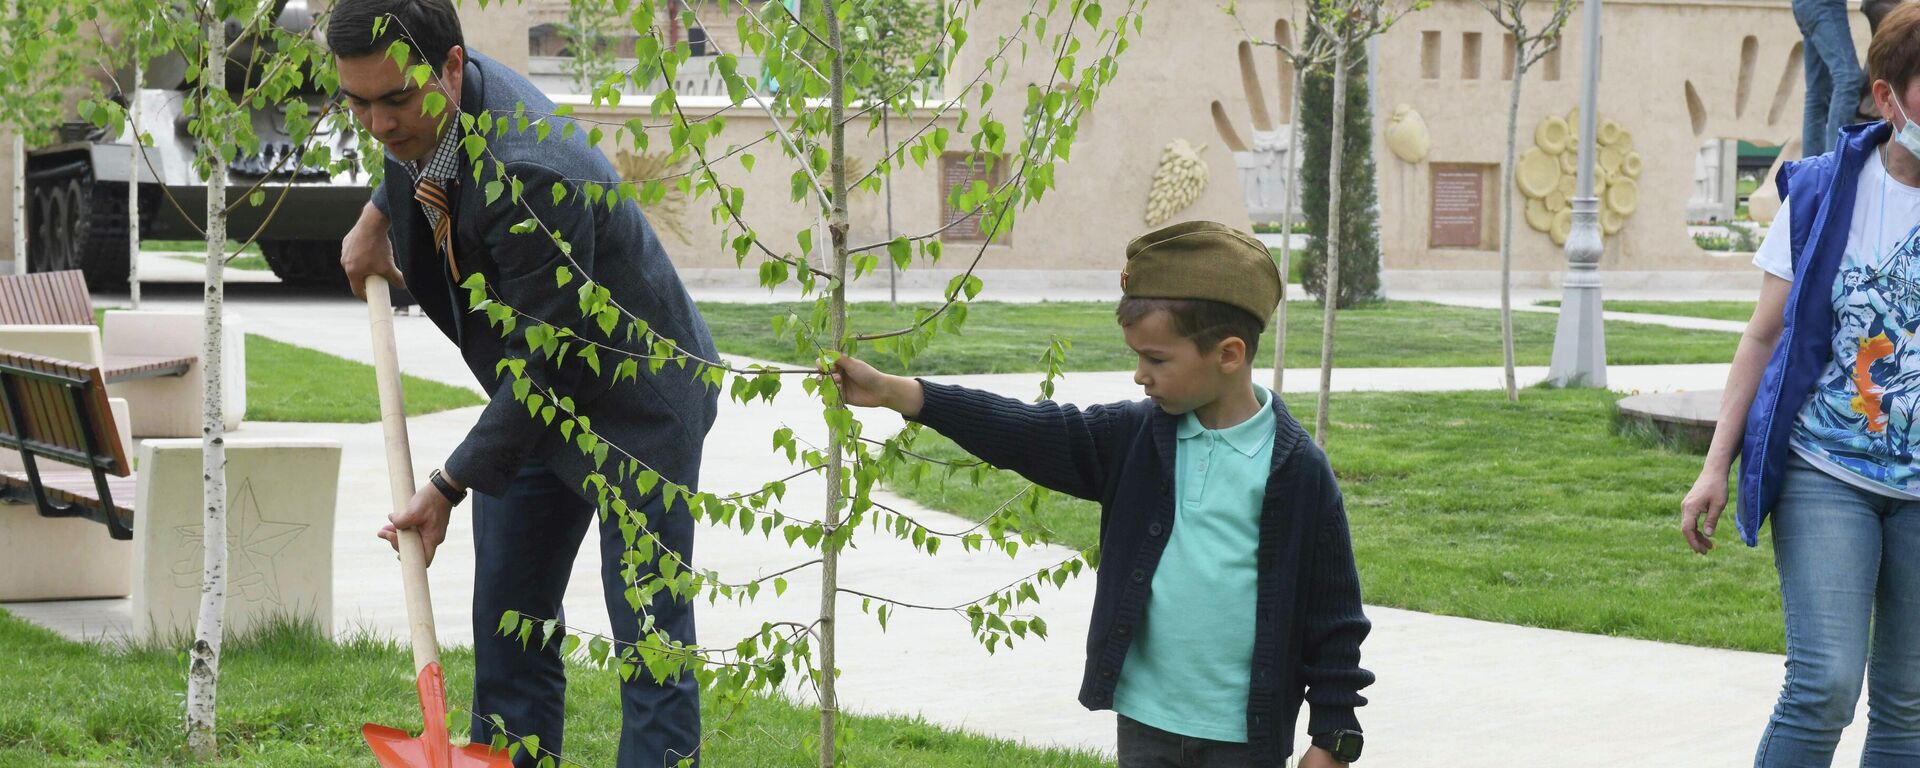 Акция Сад памяти в Парке Победы в Ташкенте - Sputnik Узбекистан, 1920, 24.04.2021